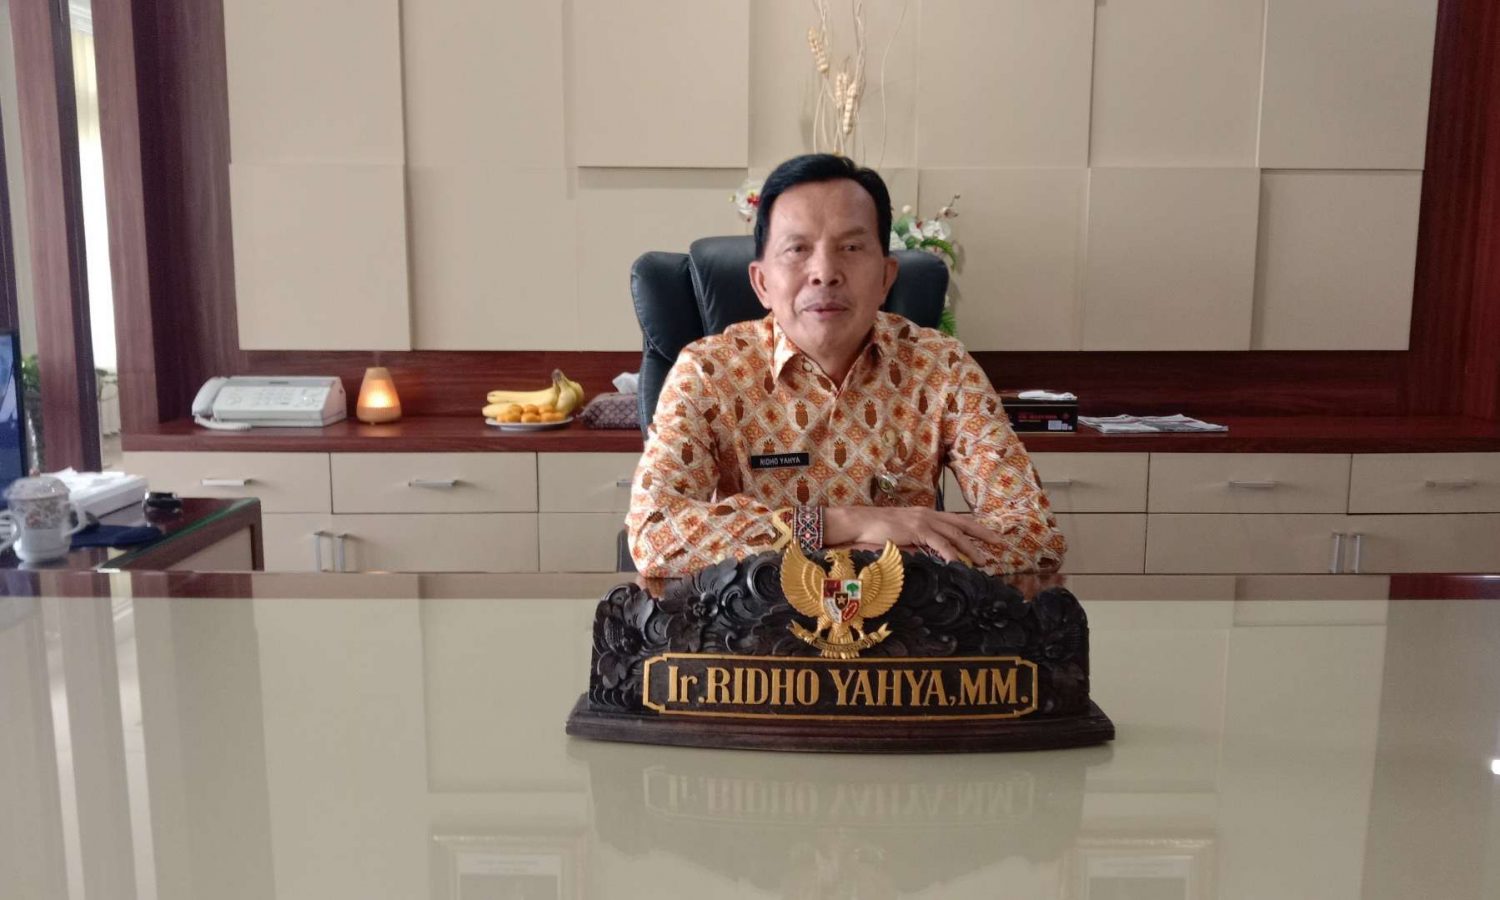 Walikota Prabumulih Ridho Yahya: Selamat Menjalankan Ibadah Puasa Bagi Semua yang Menjalankannya